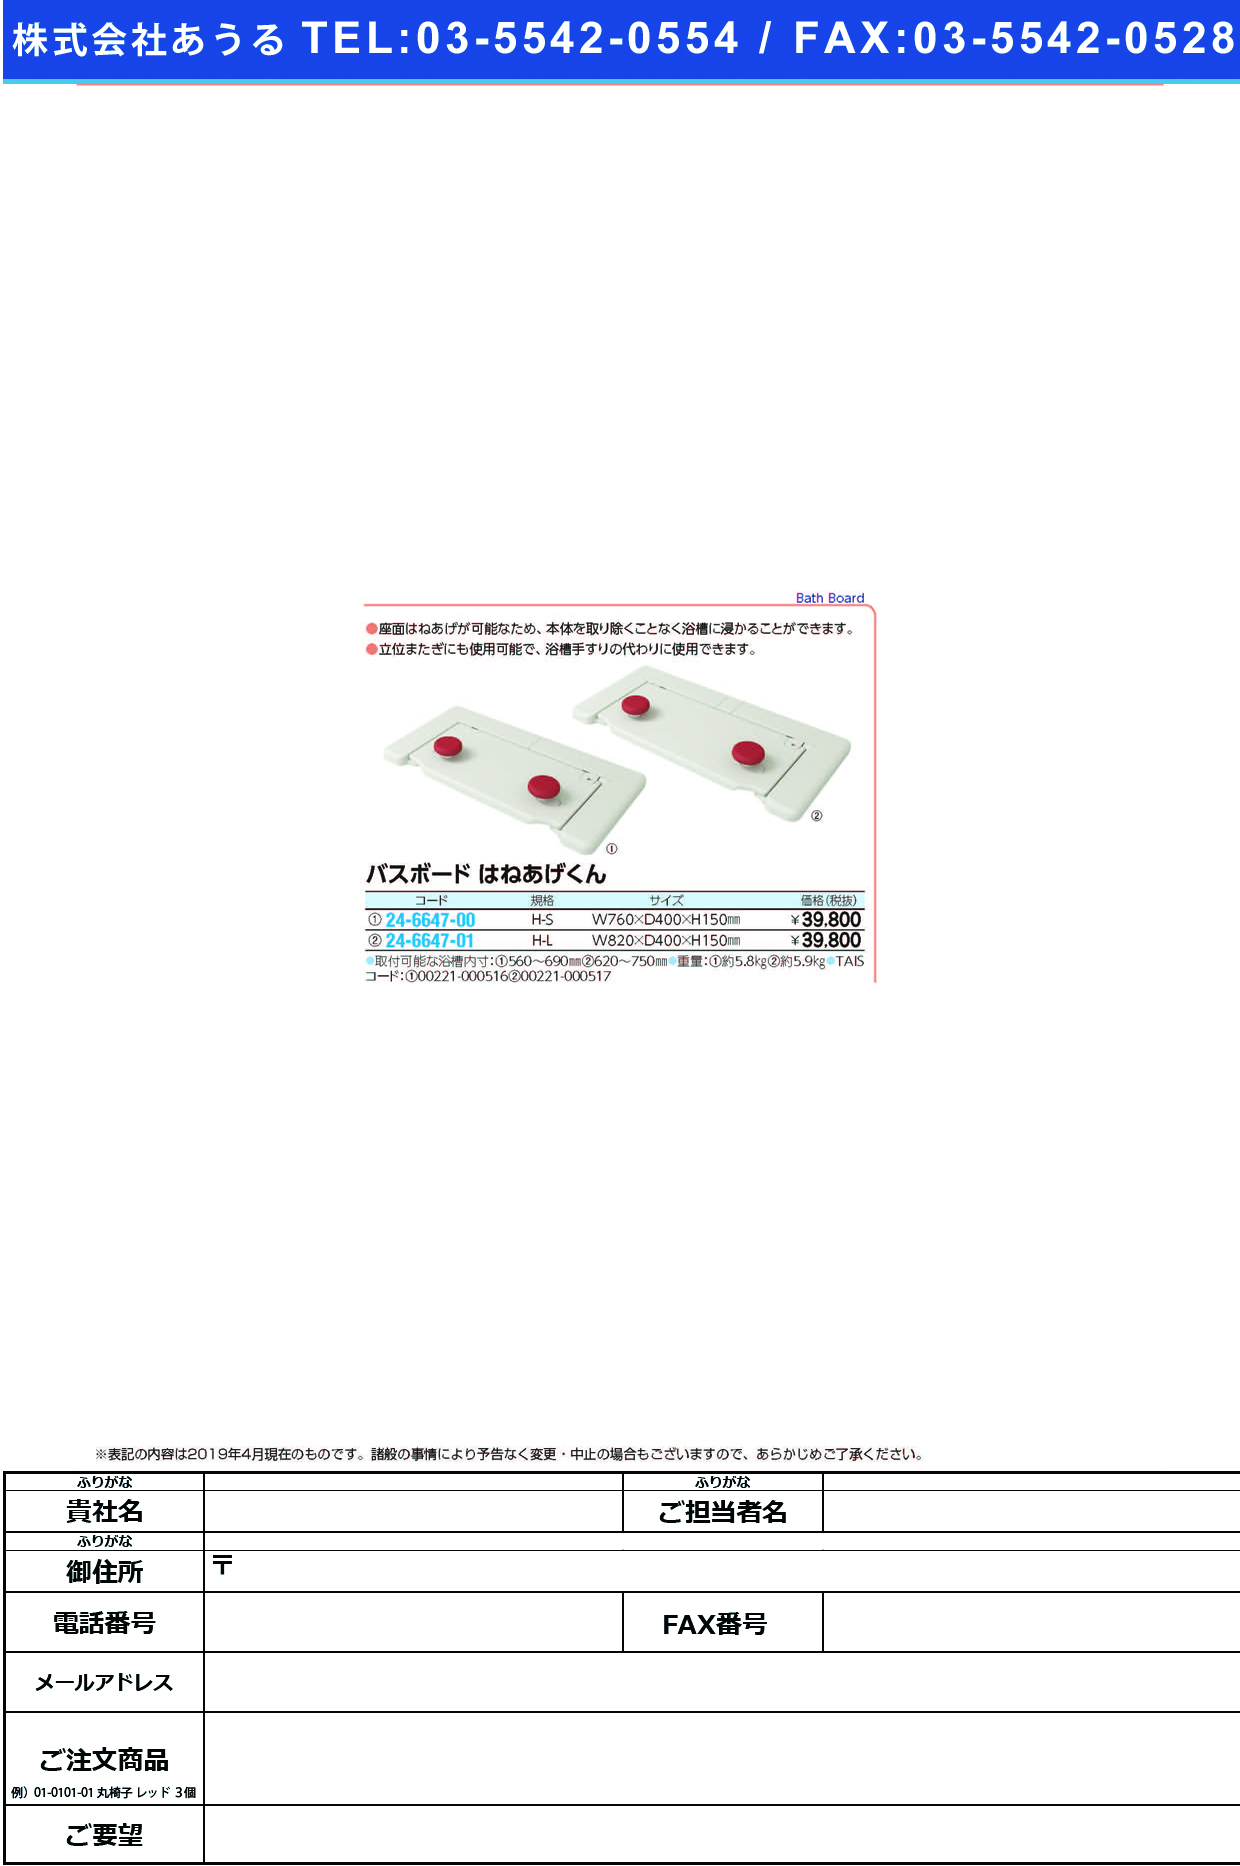 (24-6647-01)バスボードＨ−Ｌはねあげくん 535-105 ﾊﾞｽﾎﾞｰﾄﾞH-L(アロン化成)【1台単位】【2019年カタログ商品】